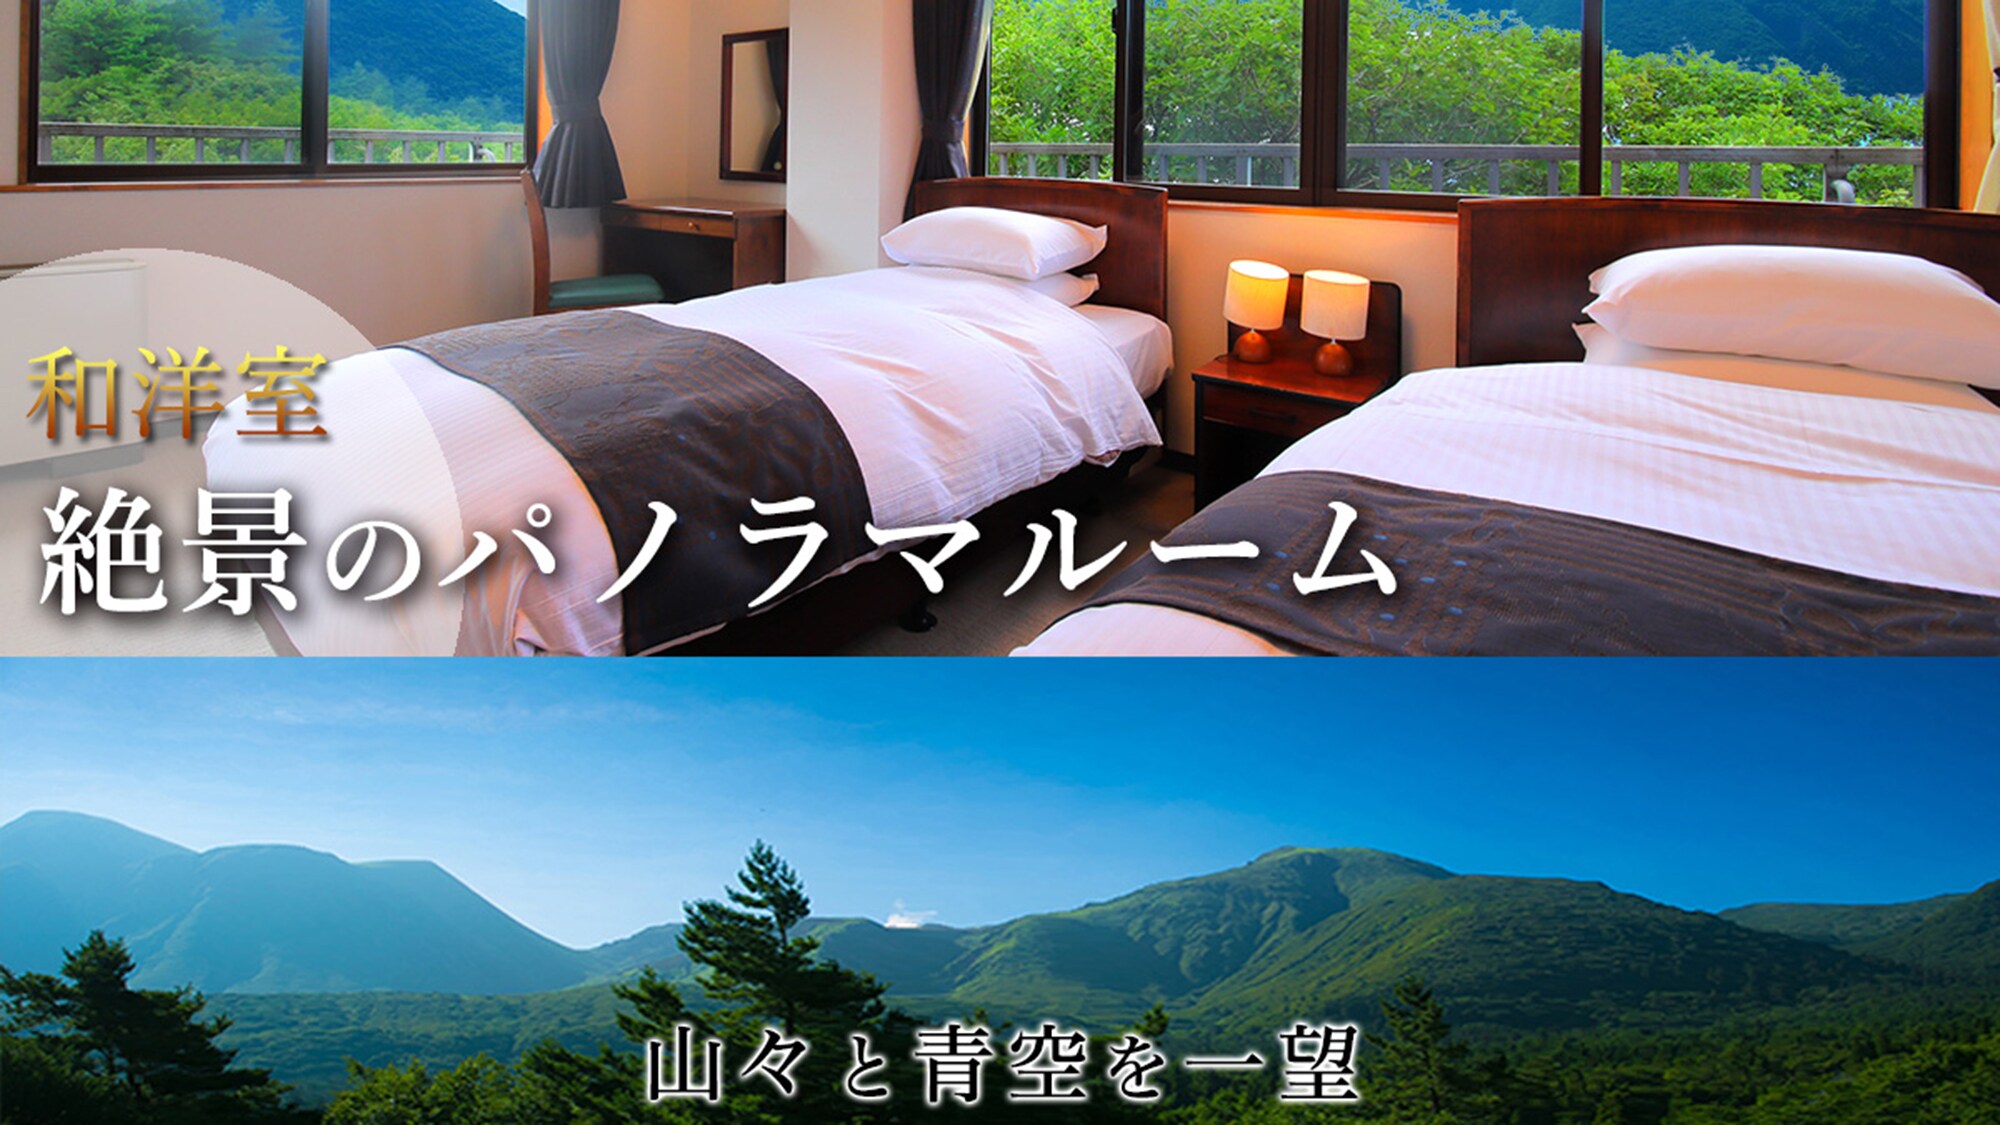 [ห้องพักแบบญี่ปุ่นและแบบตะวันตก ◇ห้ามสูบบุหรี่] -ห้องแบบพาโนรามาพร้อมวิวที่ยอดเยี่ยม-